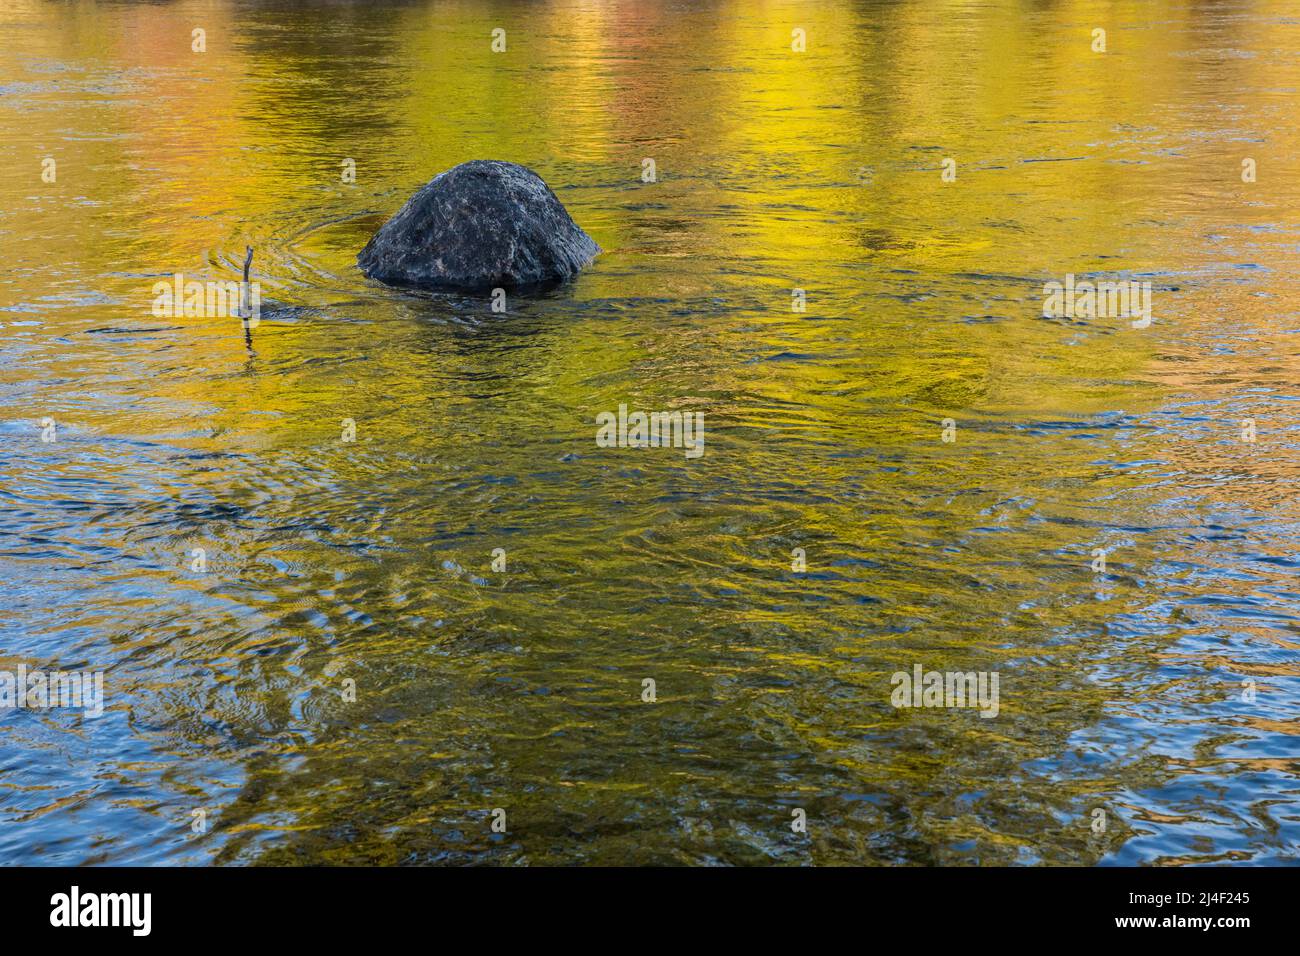 Un rocher dans la rivière Yakima et des reflets des couleurs des arbres d'automne se reflétant sur l'eau, Washington, Etats-Unis. Banque D'Images